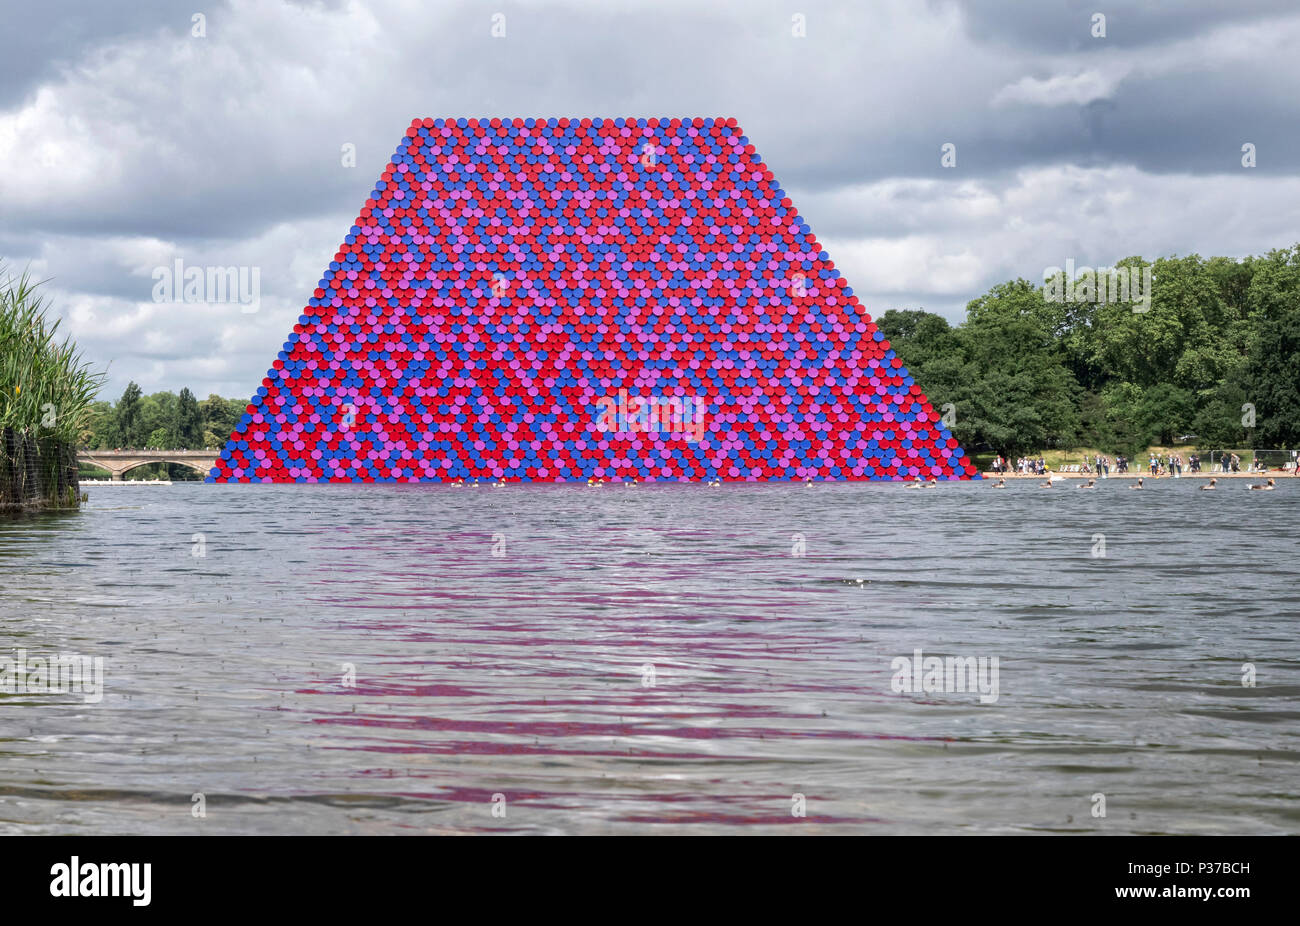 Le mastaba sculpture par Christo et Jeanne Claude dans le lac Serpentine de Hyde Park London UK Banque D'Images